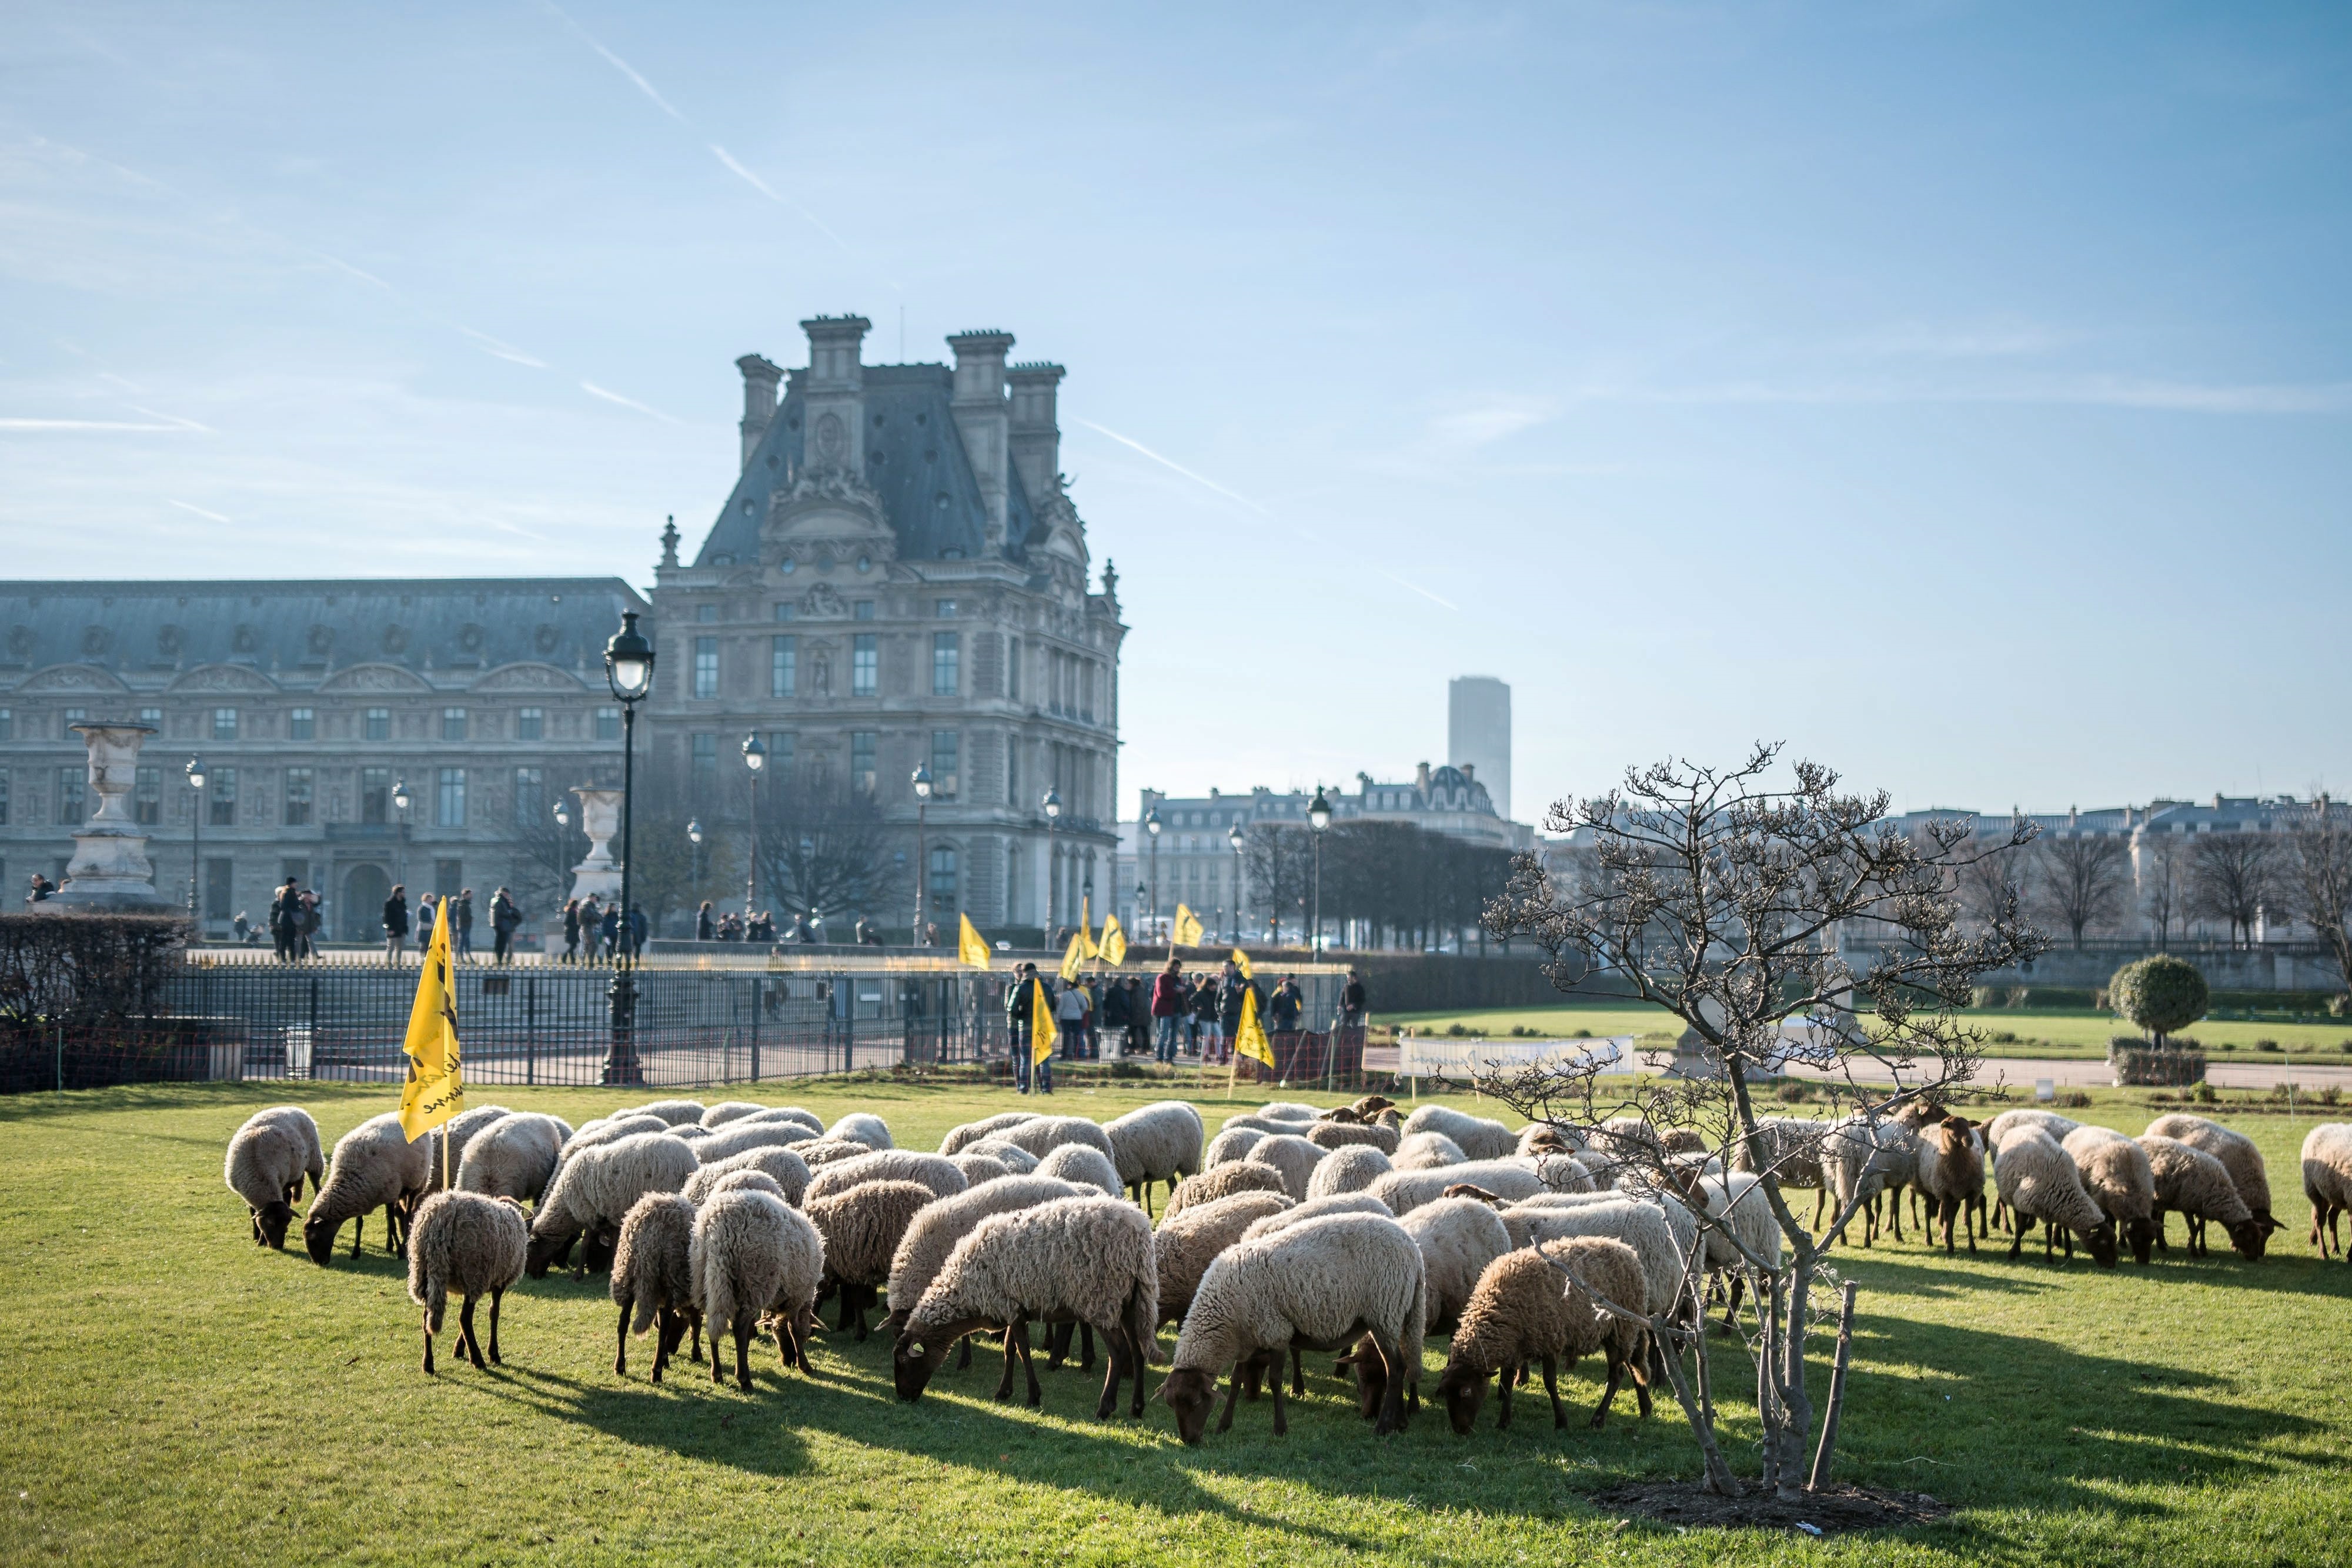 Френски фермери излязоха на протест в центъра на Париж с животните си. Част от овцете дори опасаха една от най-известните градини в града "Тюйлери", намиращa се точно до Лувъра.